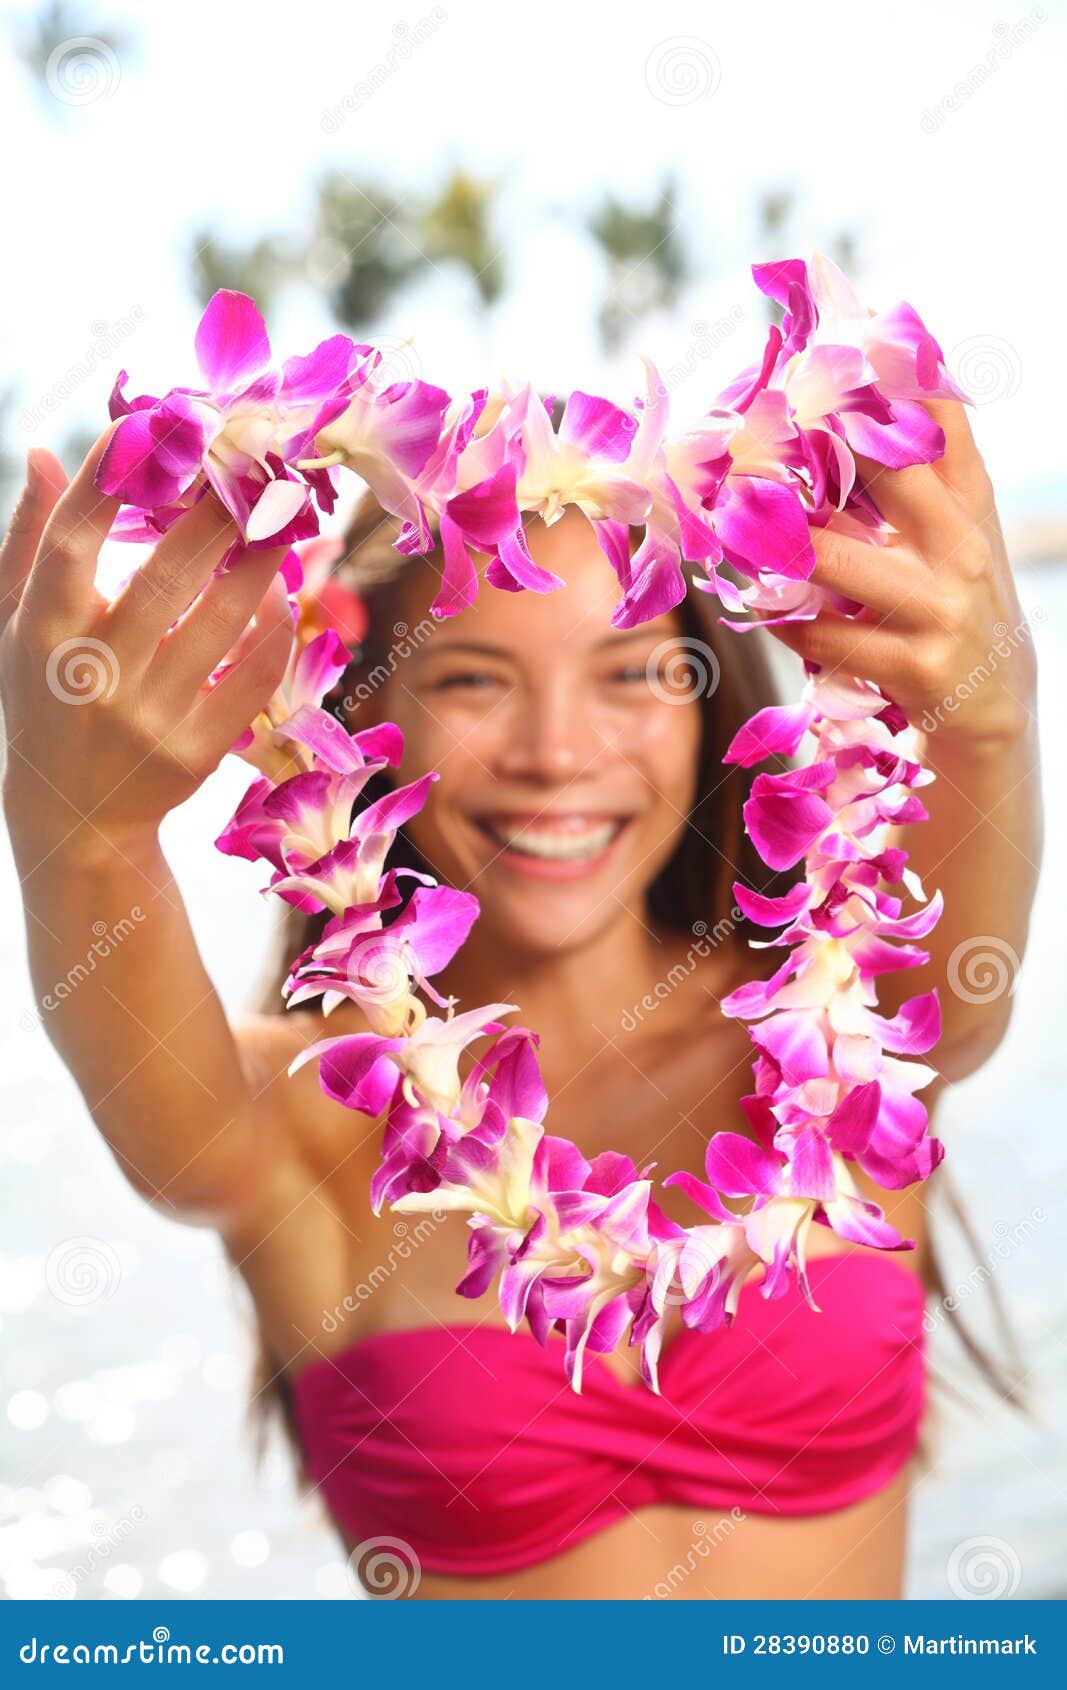 显示花列伊诗歌选的夏威夷妇女. 显示花桃红色兰花的列伊诗歌选夏威夷妇女。 比基尼泳装的美丽的微笑的混合的族种妇女在海滩产生在夏威夷海岛大海岛的欢迎列伊。